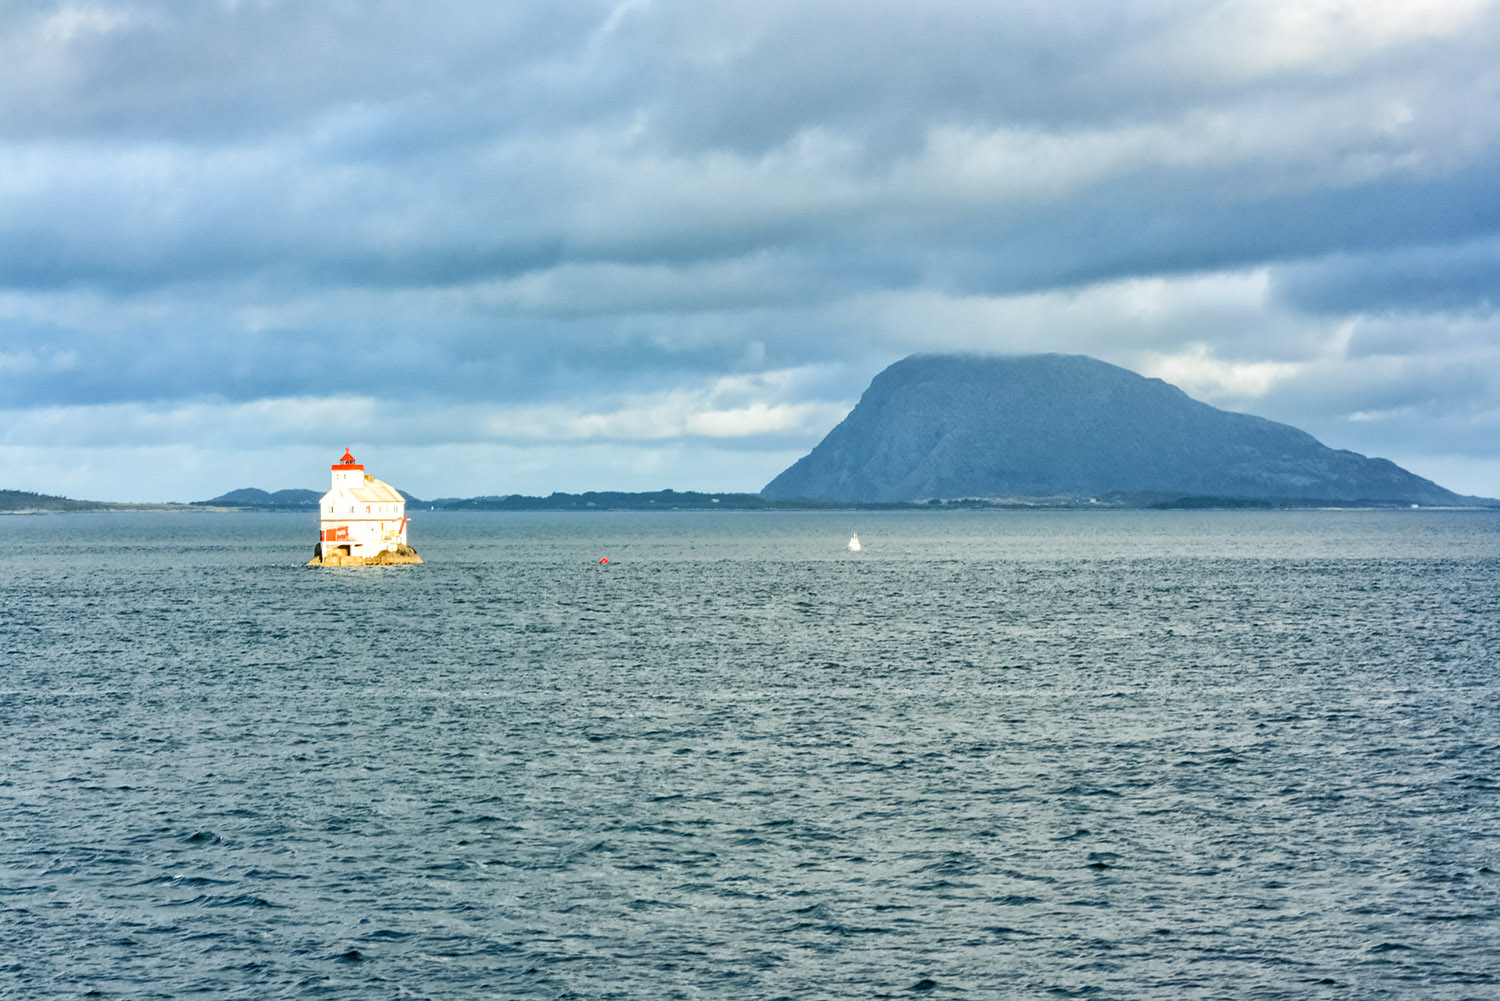 ノルウェー海、北極圏の小島と岩山